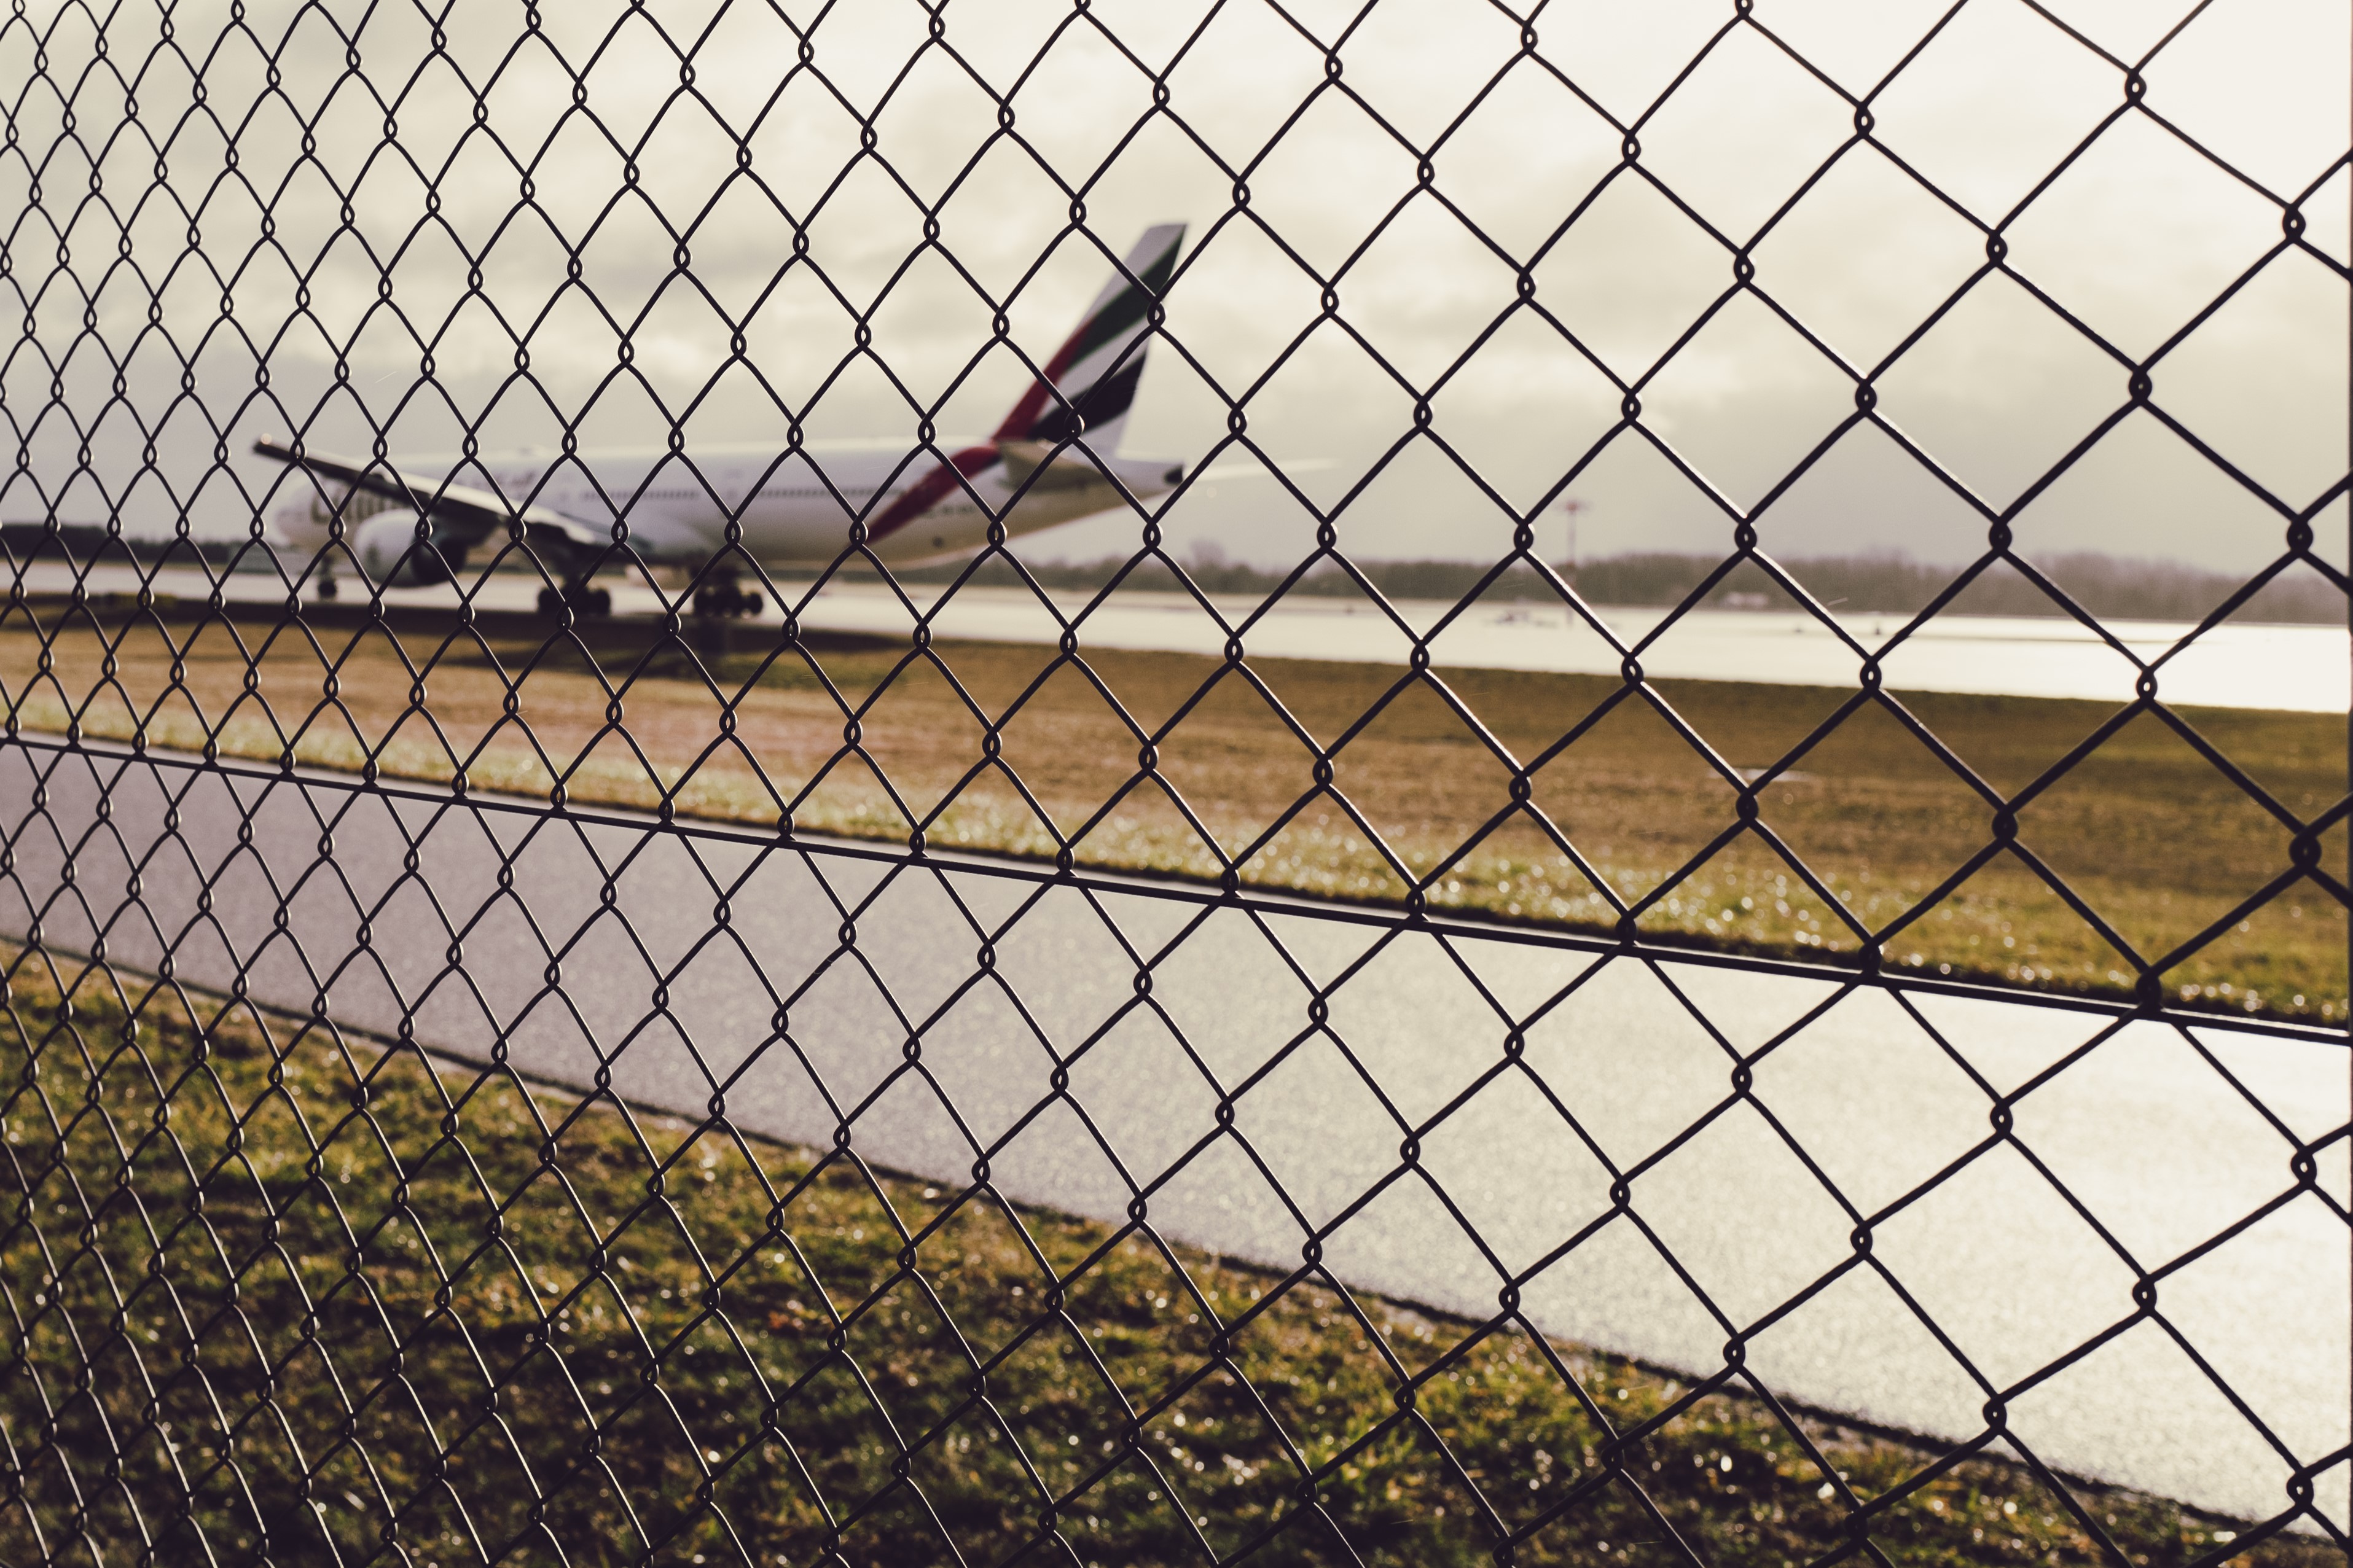 Das Bild zeigt einen Maschendrahtzaun im Vordergrund, der scharf im Fokus steht. Im Hintergrund ist ein unscharfes Flugzeug auf einem Rollfeld eines Flughafens zu erkennen. Die Umgebung wirkt trüb und bewölkt mit einer diffusen Beleuchtung.